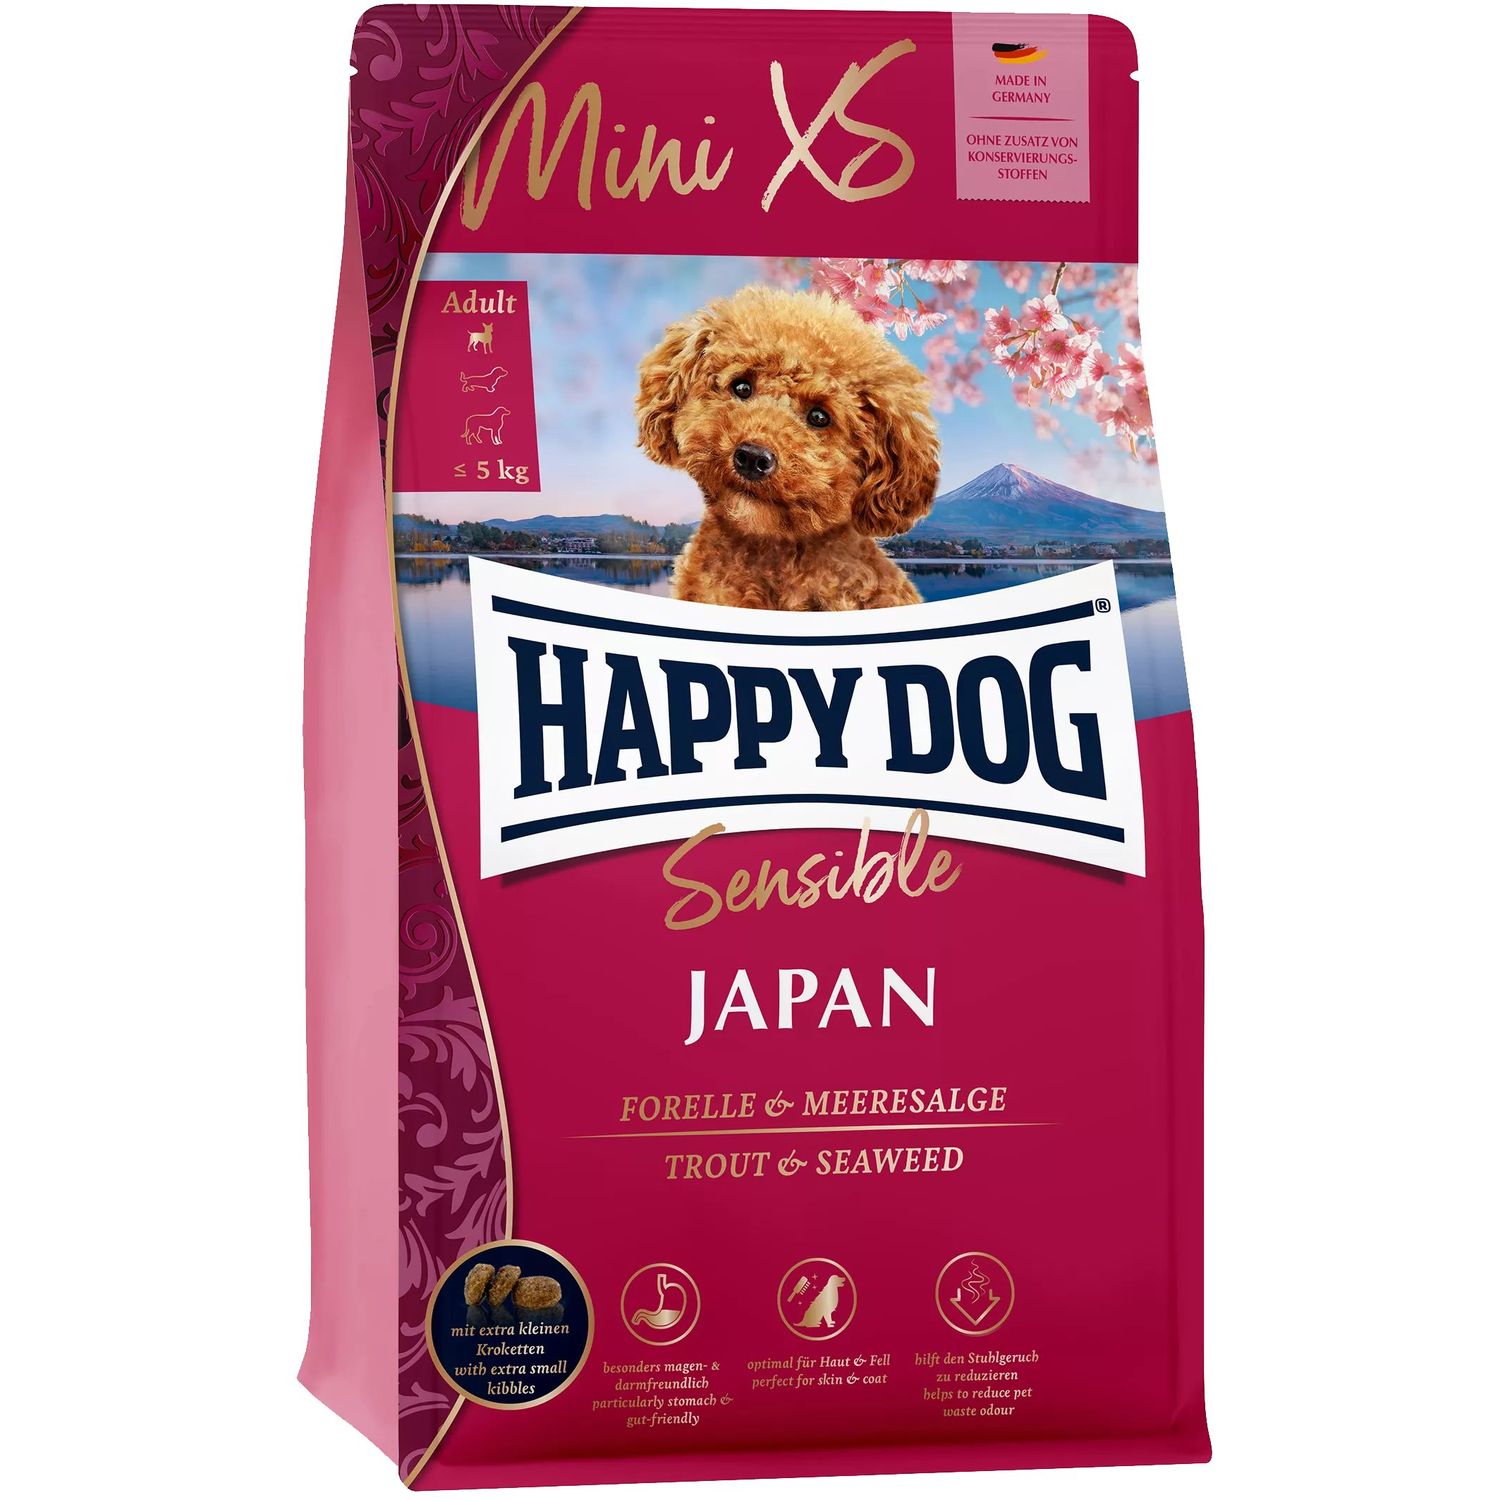 Сухой корм для собак Happy Dog Sensible Mini XS Japan, скурицей з куркою, форелью и водорослями, 300 г - фото 1